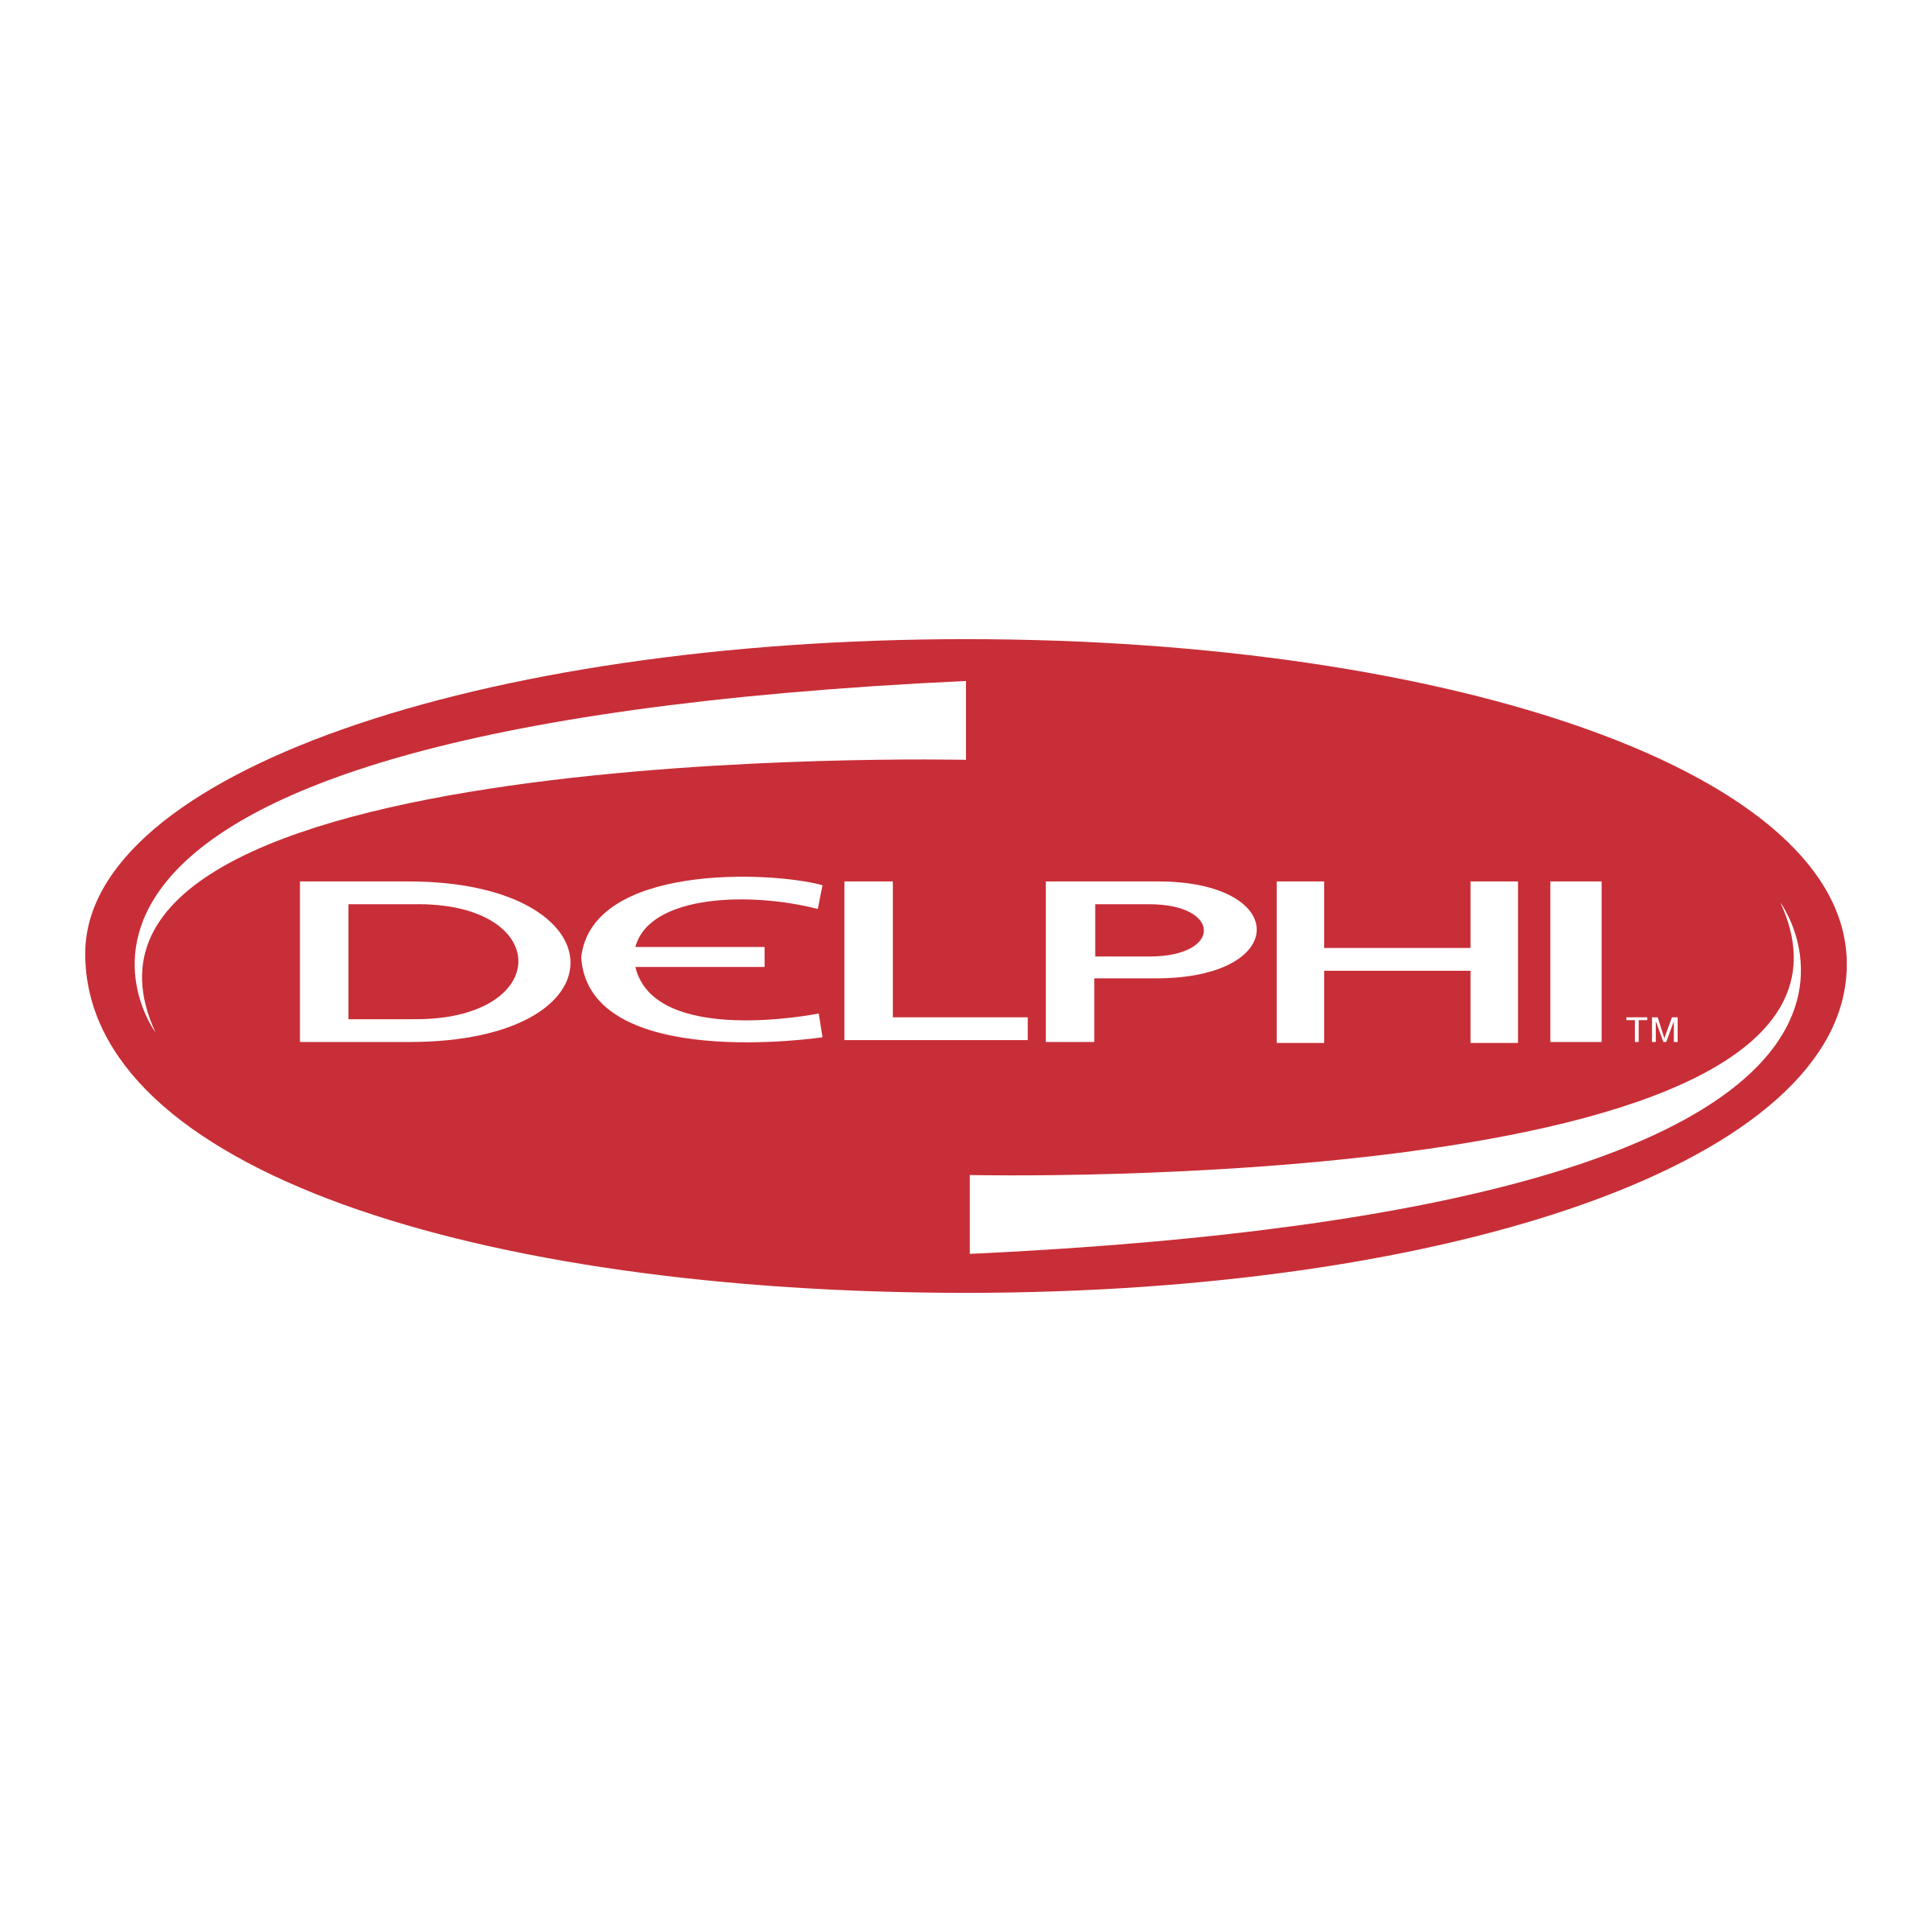 delphi 2 logo png transparent